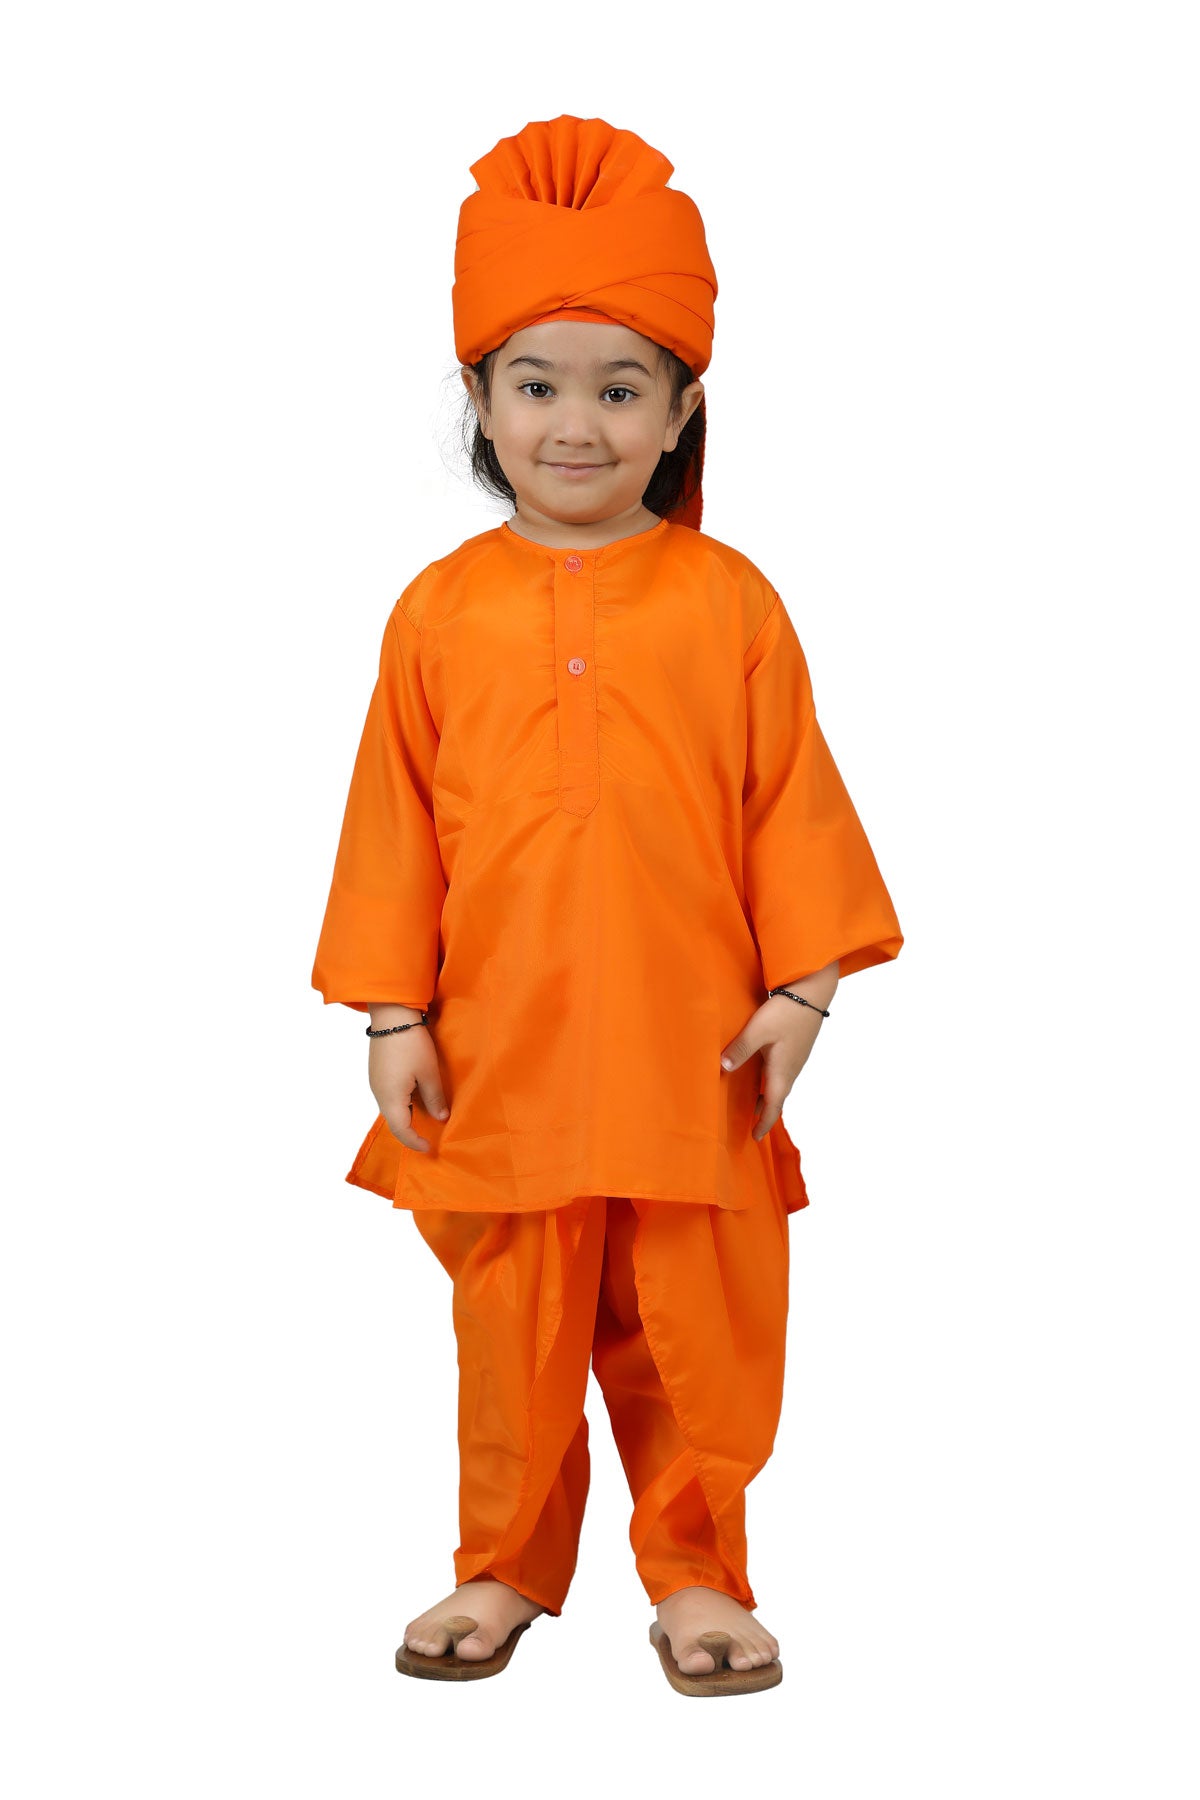 Gujrati Boy Dress at Rs 300 | Bhogal | Delhi | ID: 18758059730